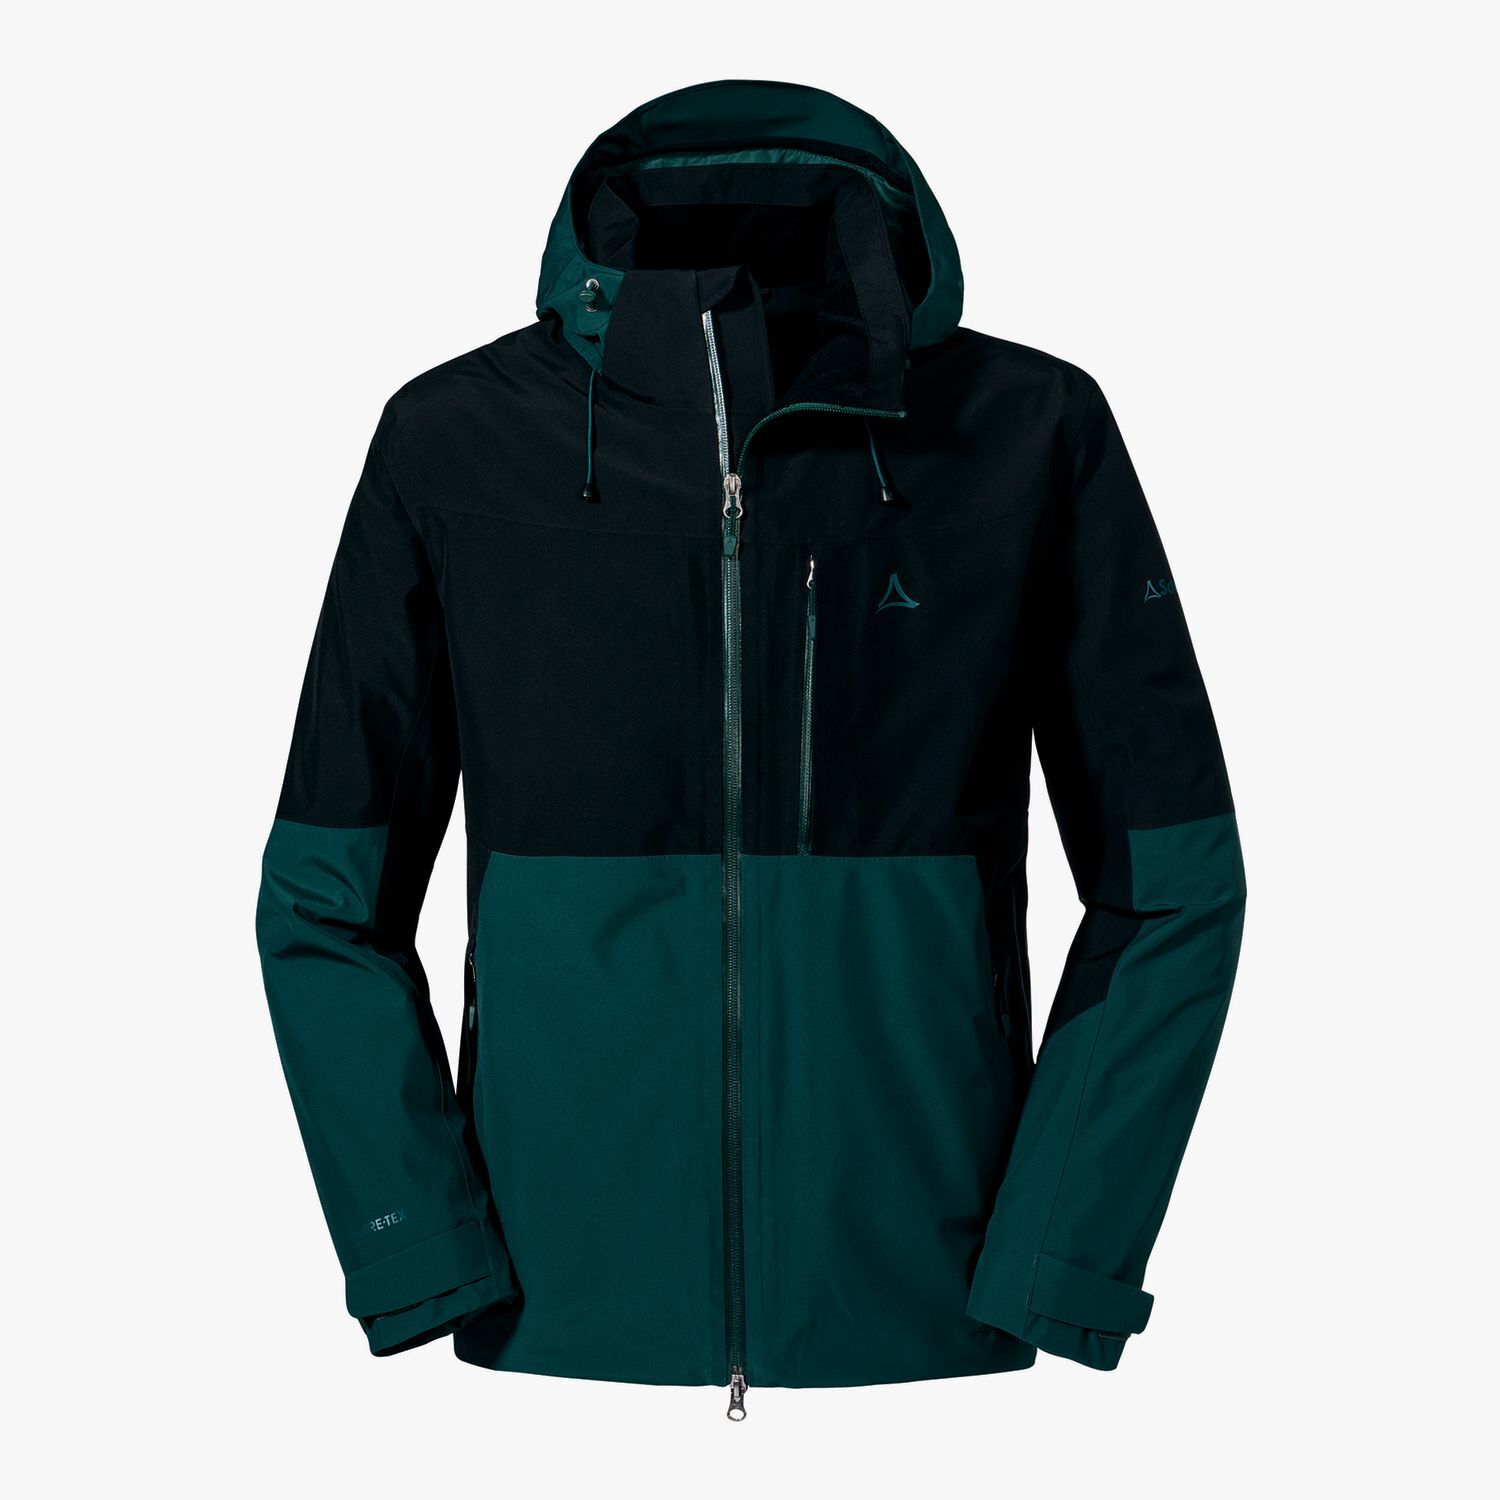 Schöffel Jacket Padon - Waterproof jacket - Men's